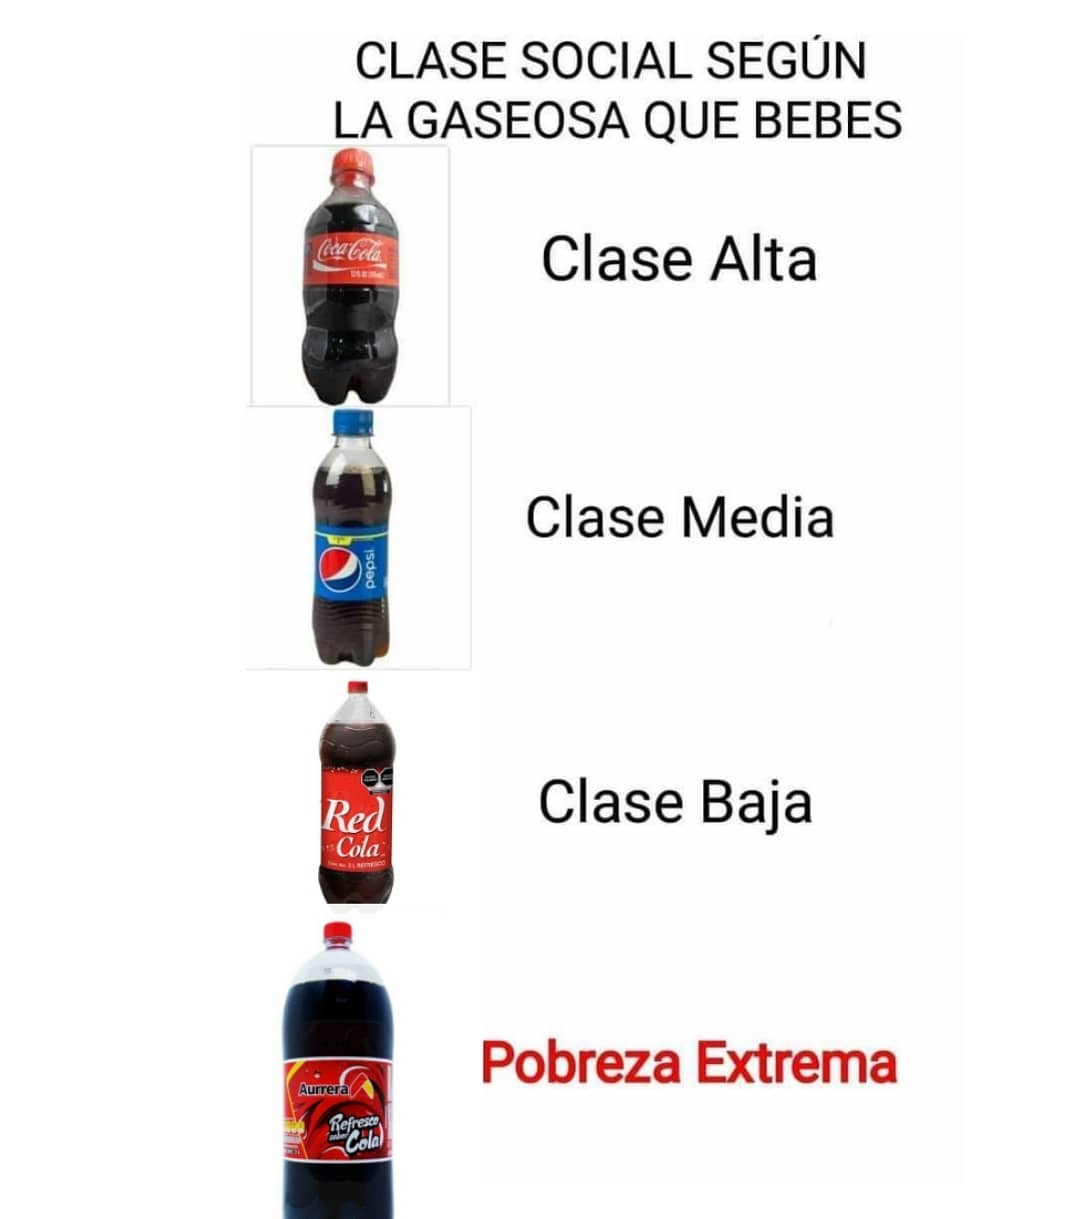 Clase social según la gaseosa que bebes.  Clase Alta. Clase Media. Clase Baja. Pobreza Extrema.